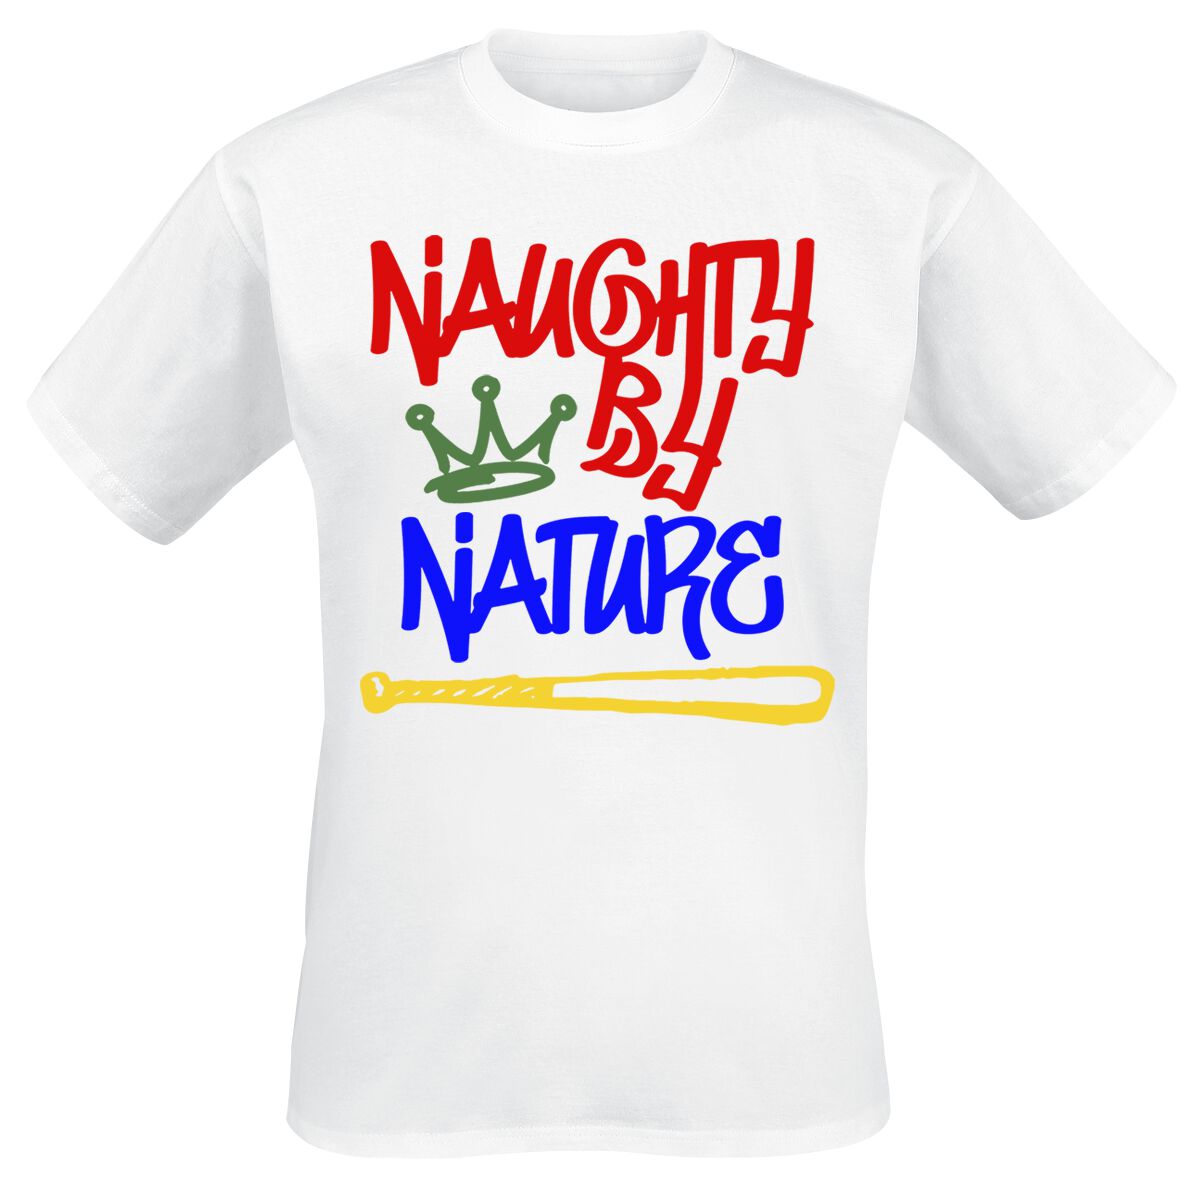 Naughty by Nature T-Shirt - Graffiti Logo - S bis 3XL - für Männer - Größe S - weiß  - Lizenziertes Merchandise!